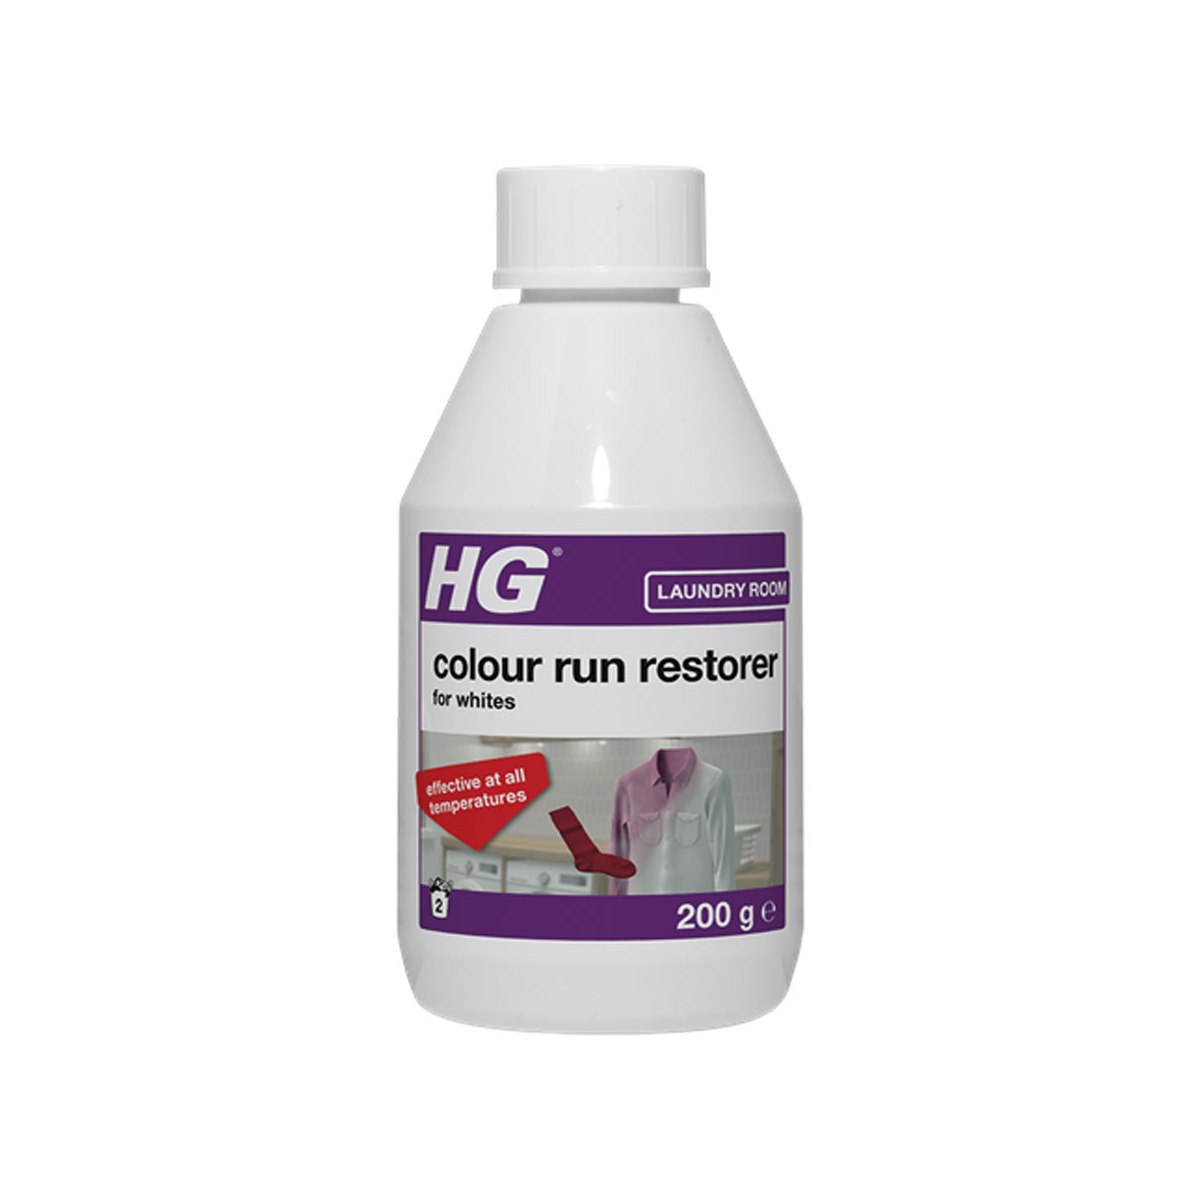 HG Colour Run Restorer for Whites 200g